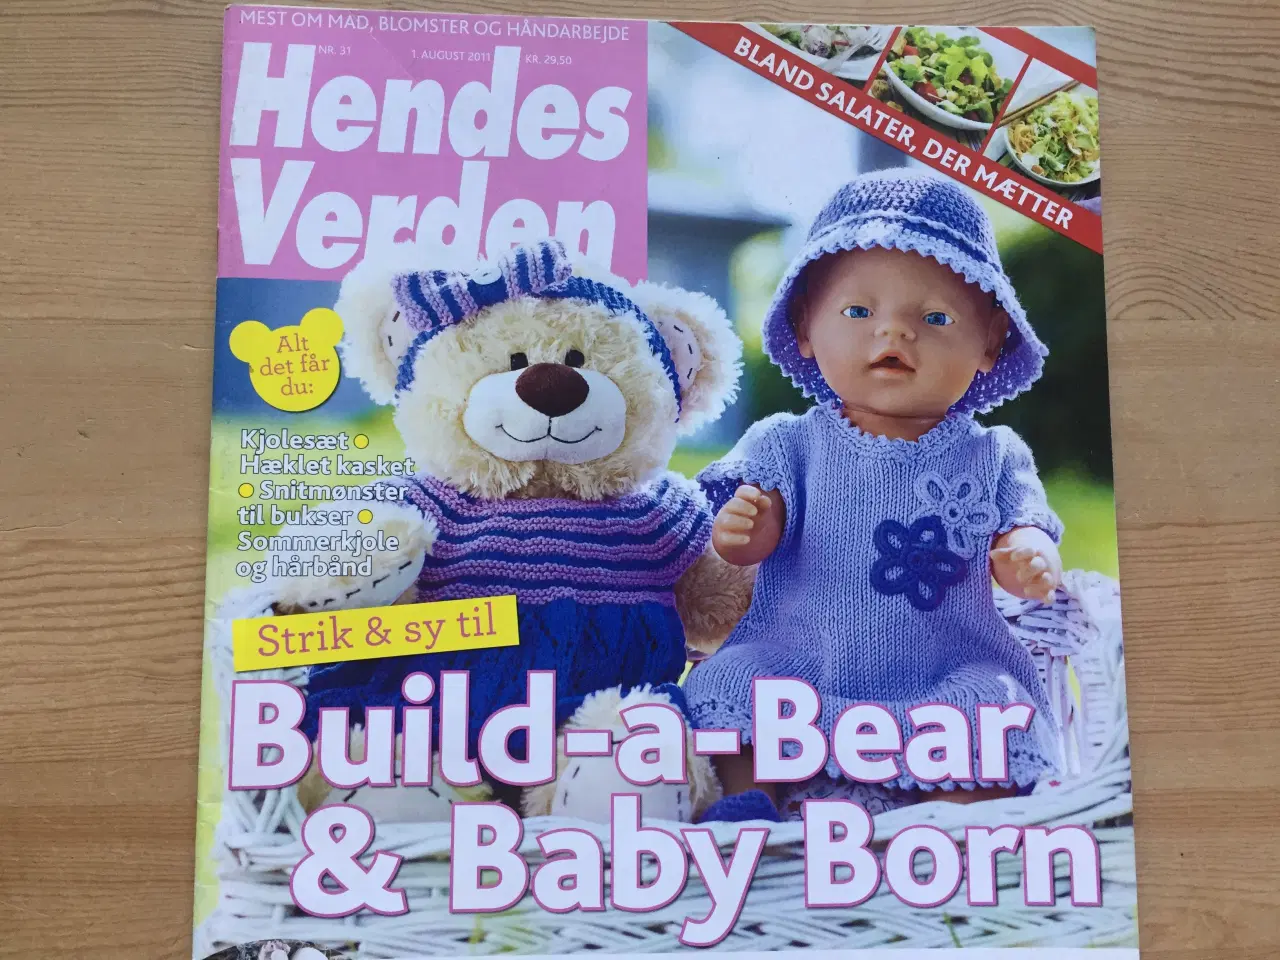 Billede 2 - Baby Born og Build-a-Bear